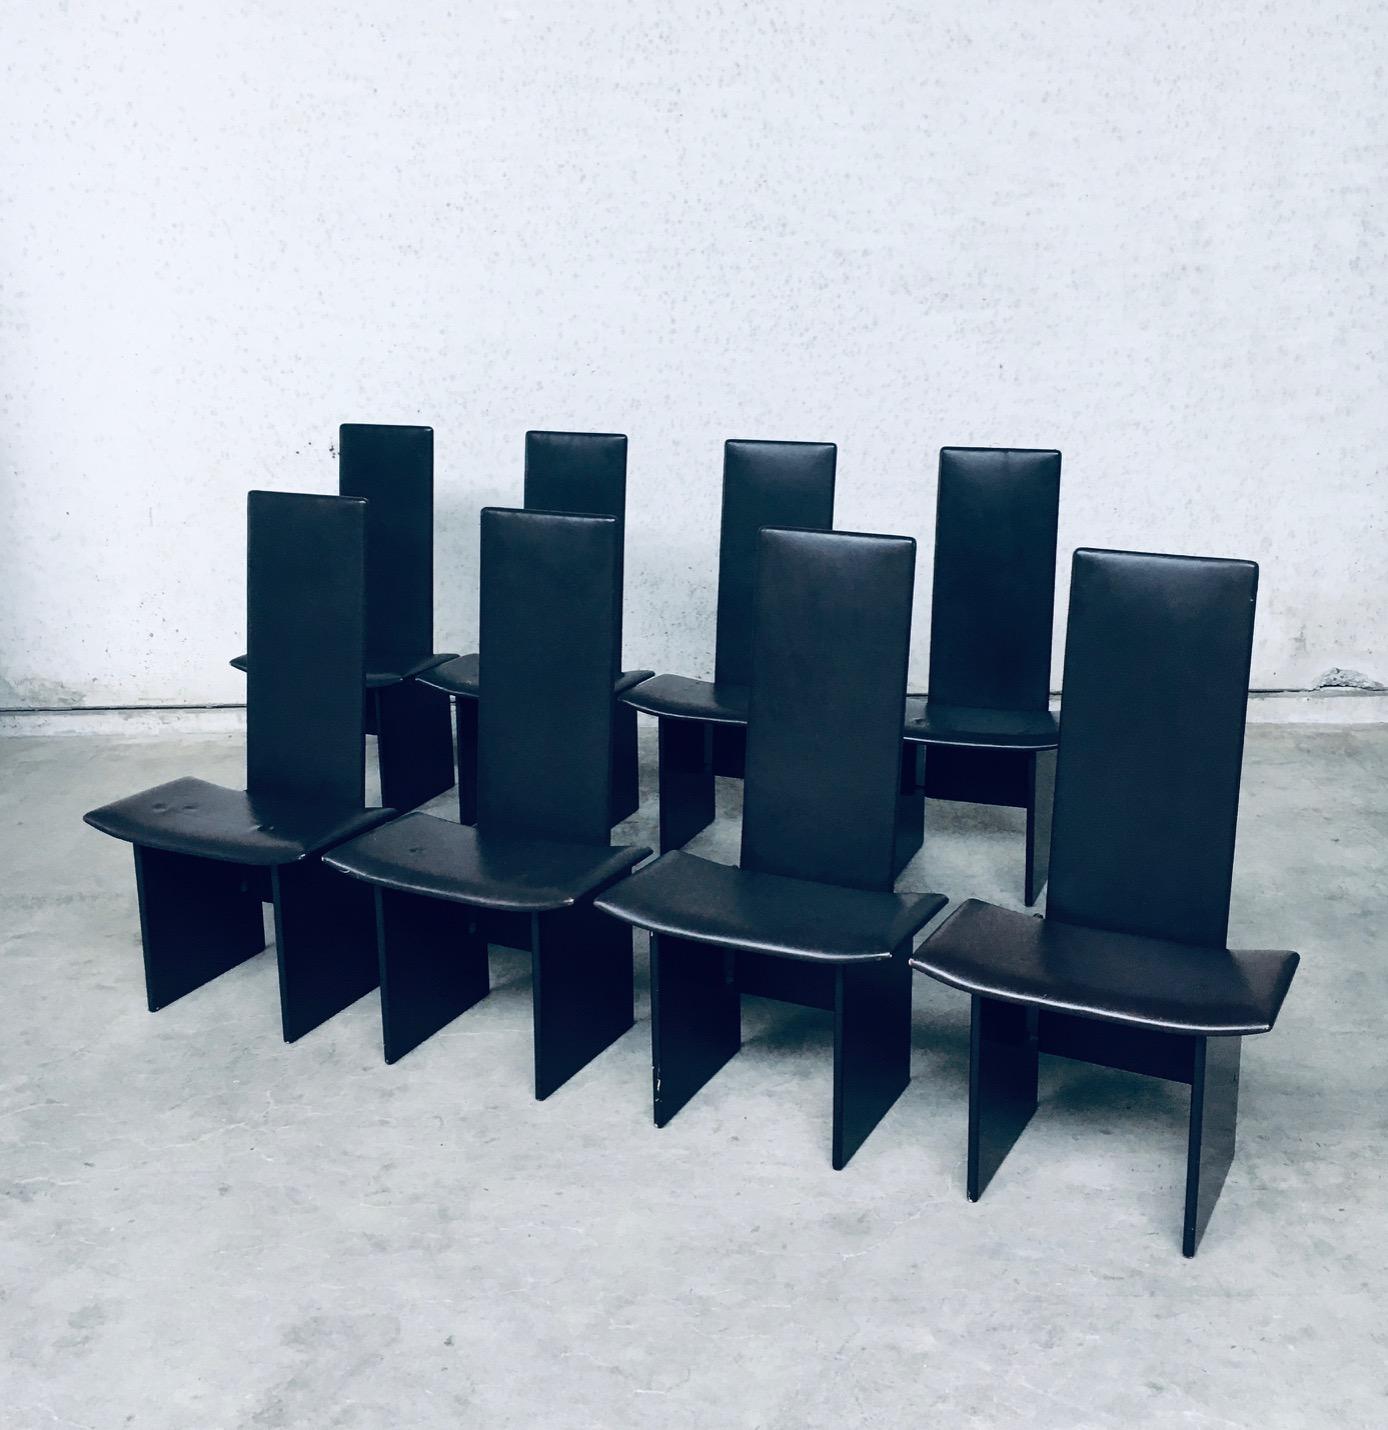 Vintage Postmodern Design 'RENNIE' Esszimmerstuhl Satz von 8 von Kazuhide Takahama für Simon Gavina, hergestellt in Italien 1980er Jahre. Architektonische Design-Esszimmerstühle in Dunkelbraun. Sitz und Rückenlehne sind aus schokoladenbraunem